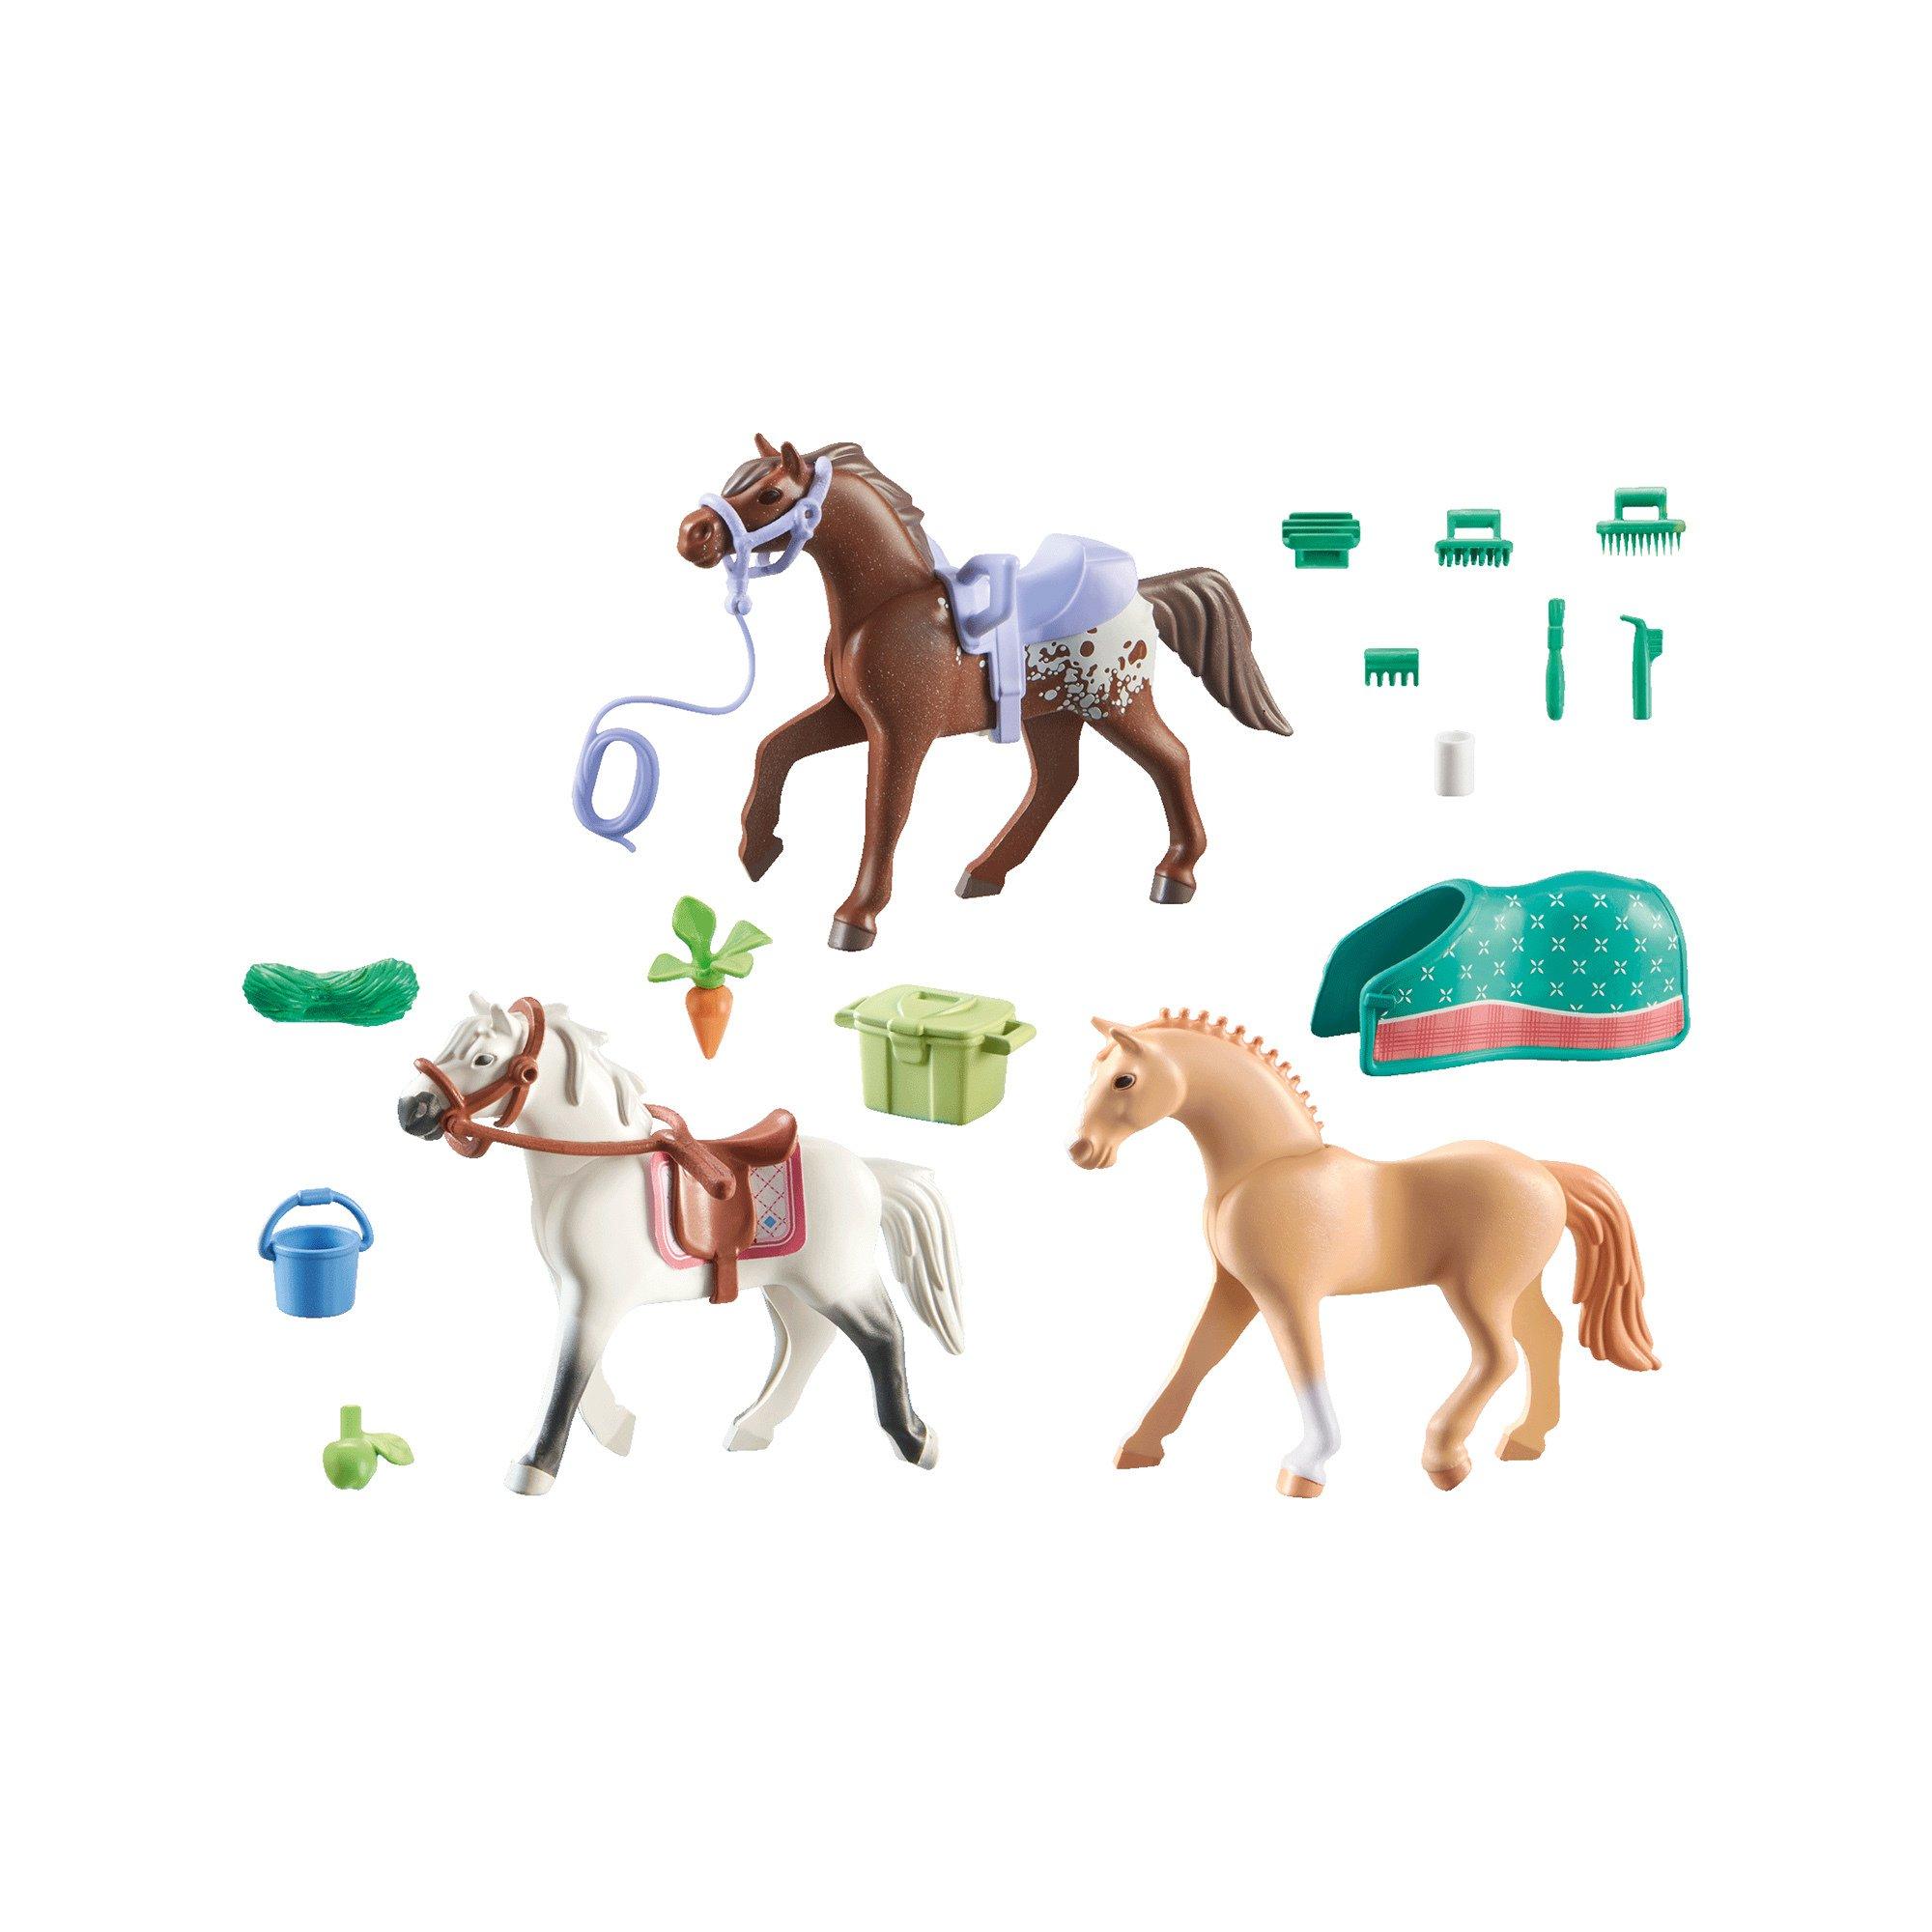 Playmobil  71356 Horses of Waterfall - 3 Pferde 